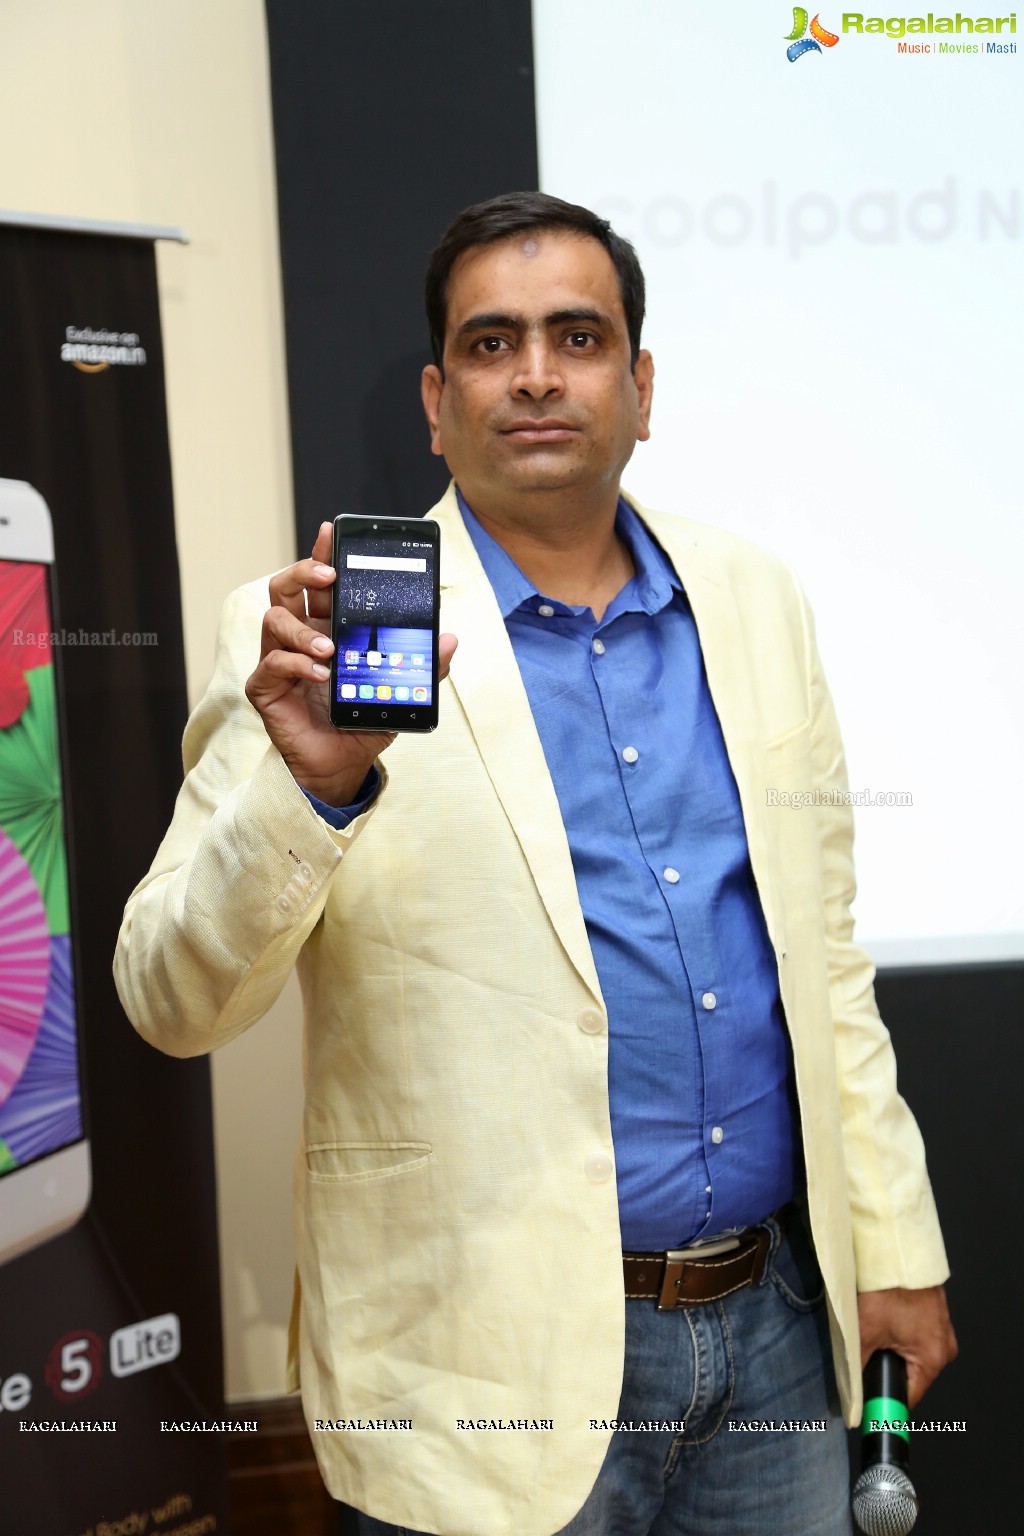 Coolpad India Note 5 Lite Launch at ITC Kakatiya, Hyderabad